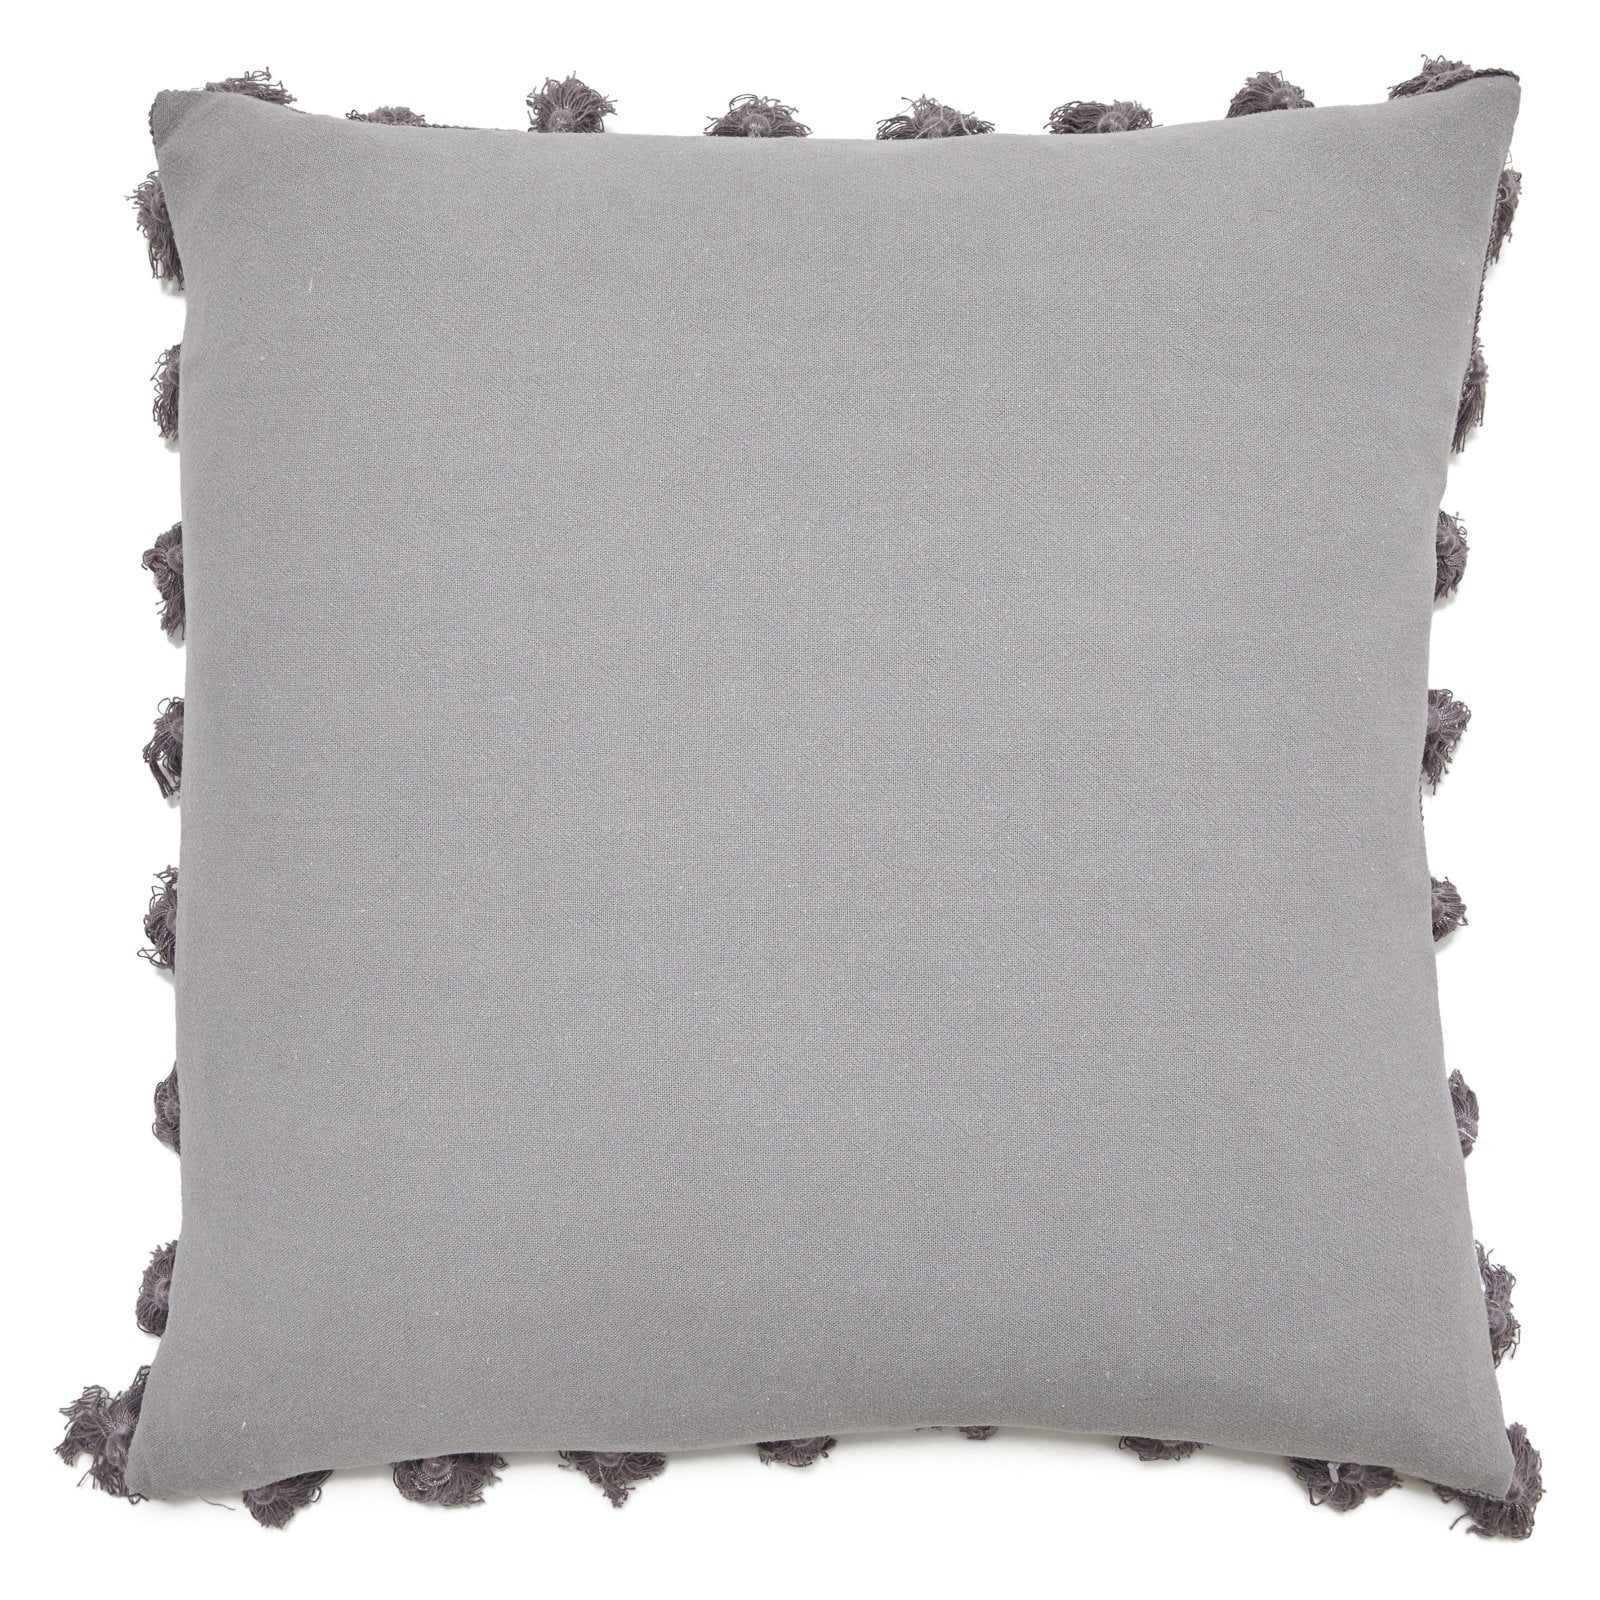 BLACK Belham Living Linen Throw Pillow with Tassels NEW 